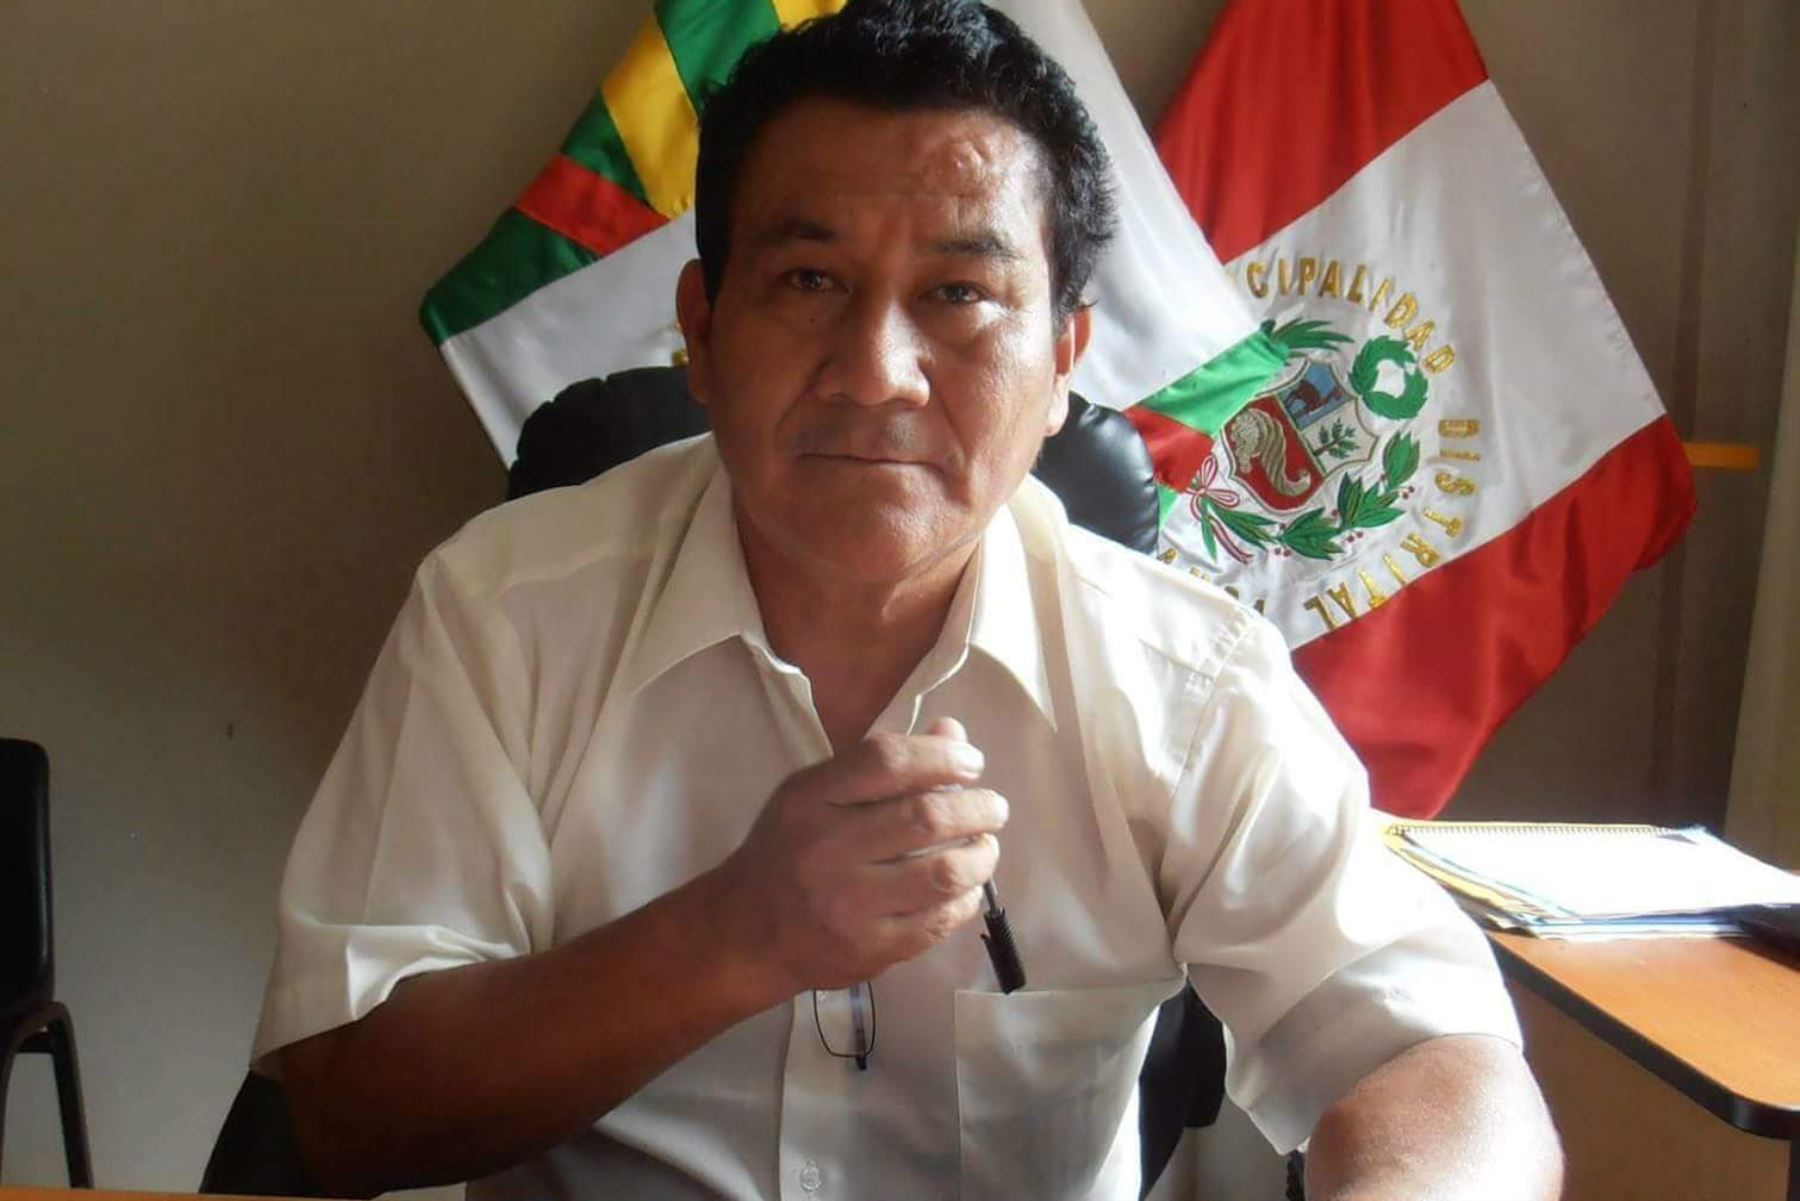 Alcalde del distrito de Ocobamba, Paulino Minauro Villavicencio, es investigado por el presunto delito de peculado doloso agravado, en agravio del Estado peruano.